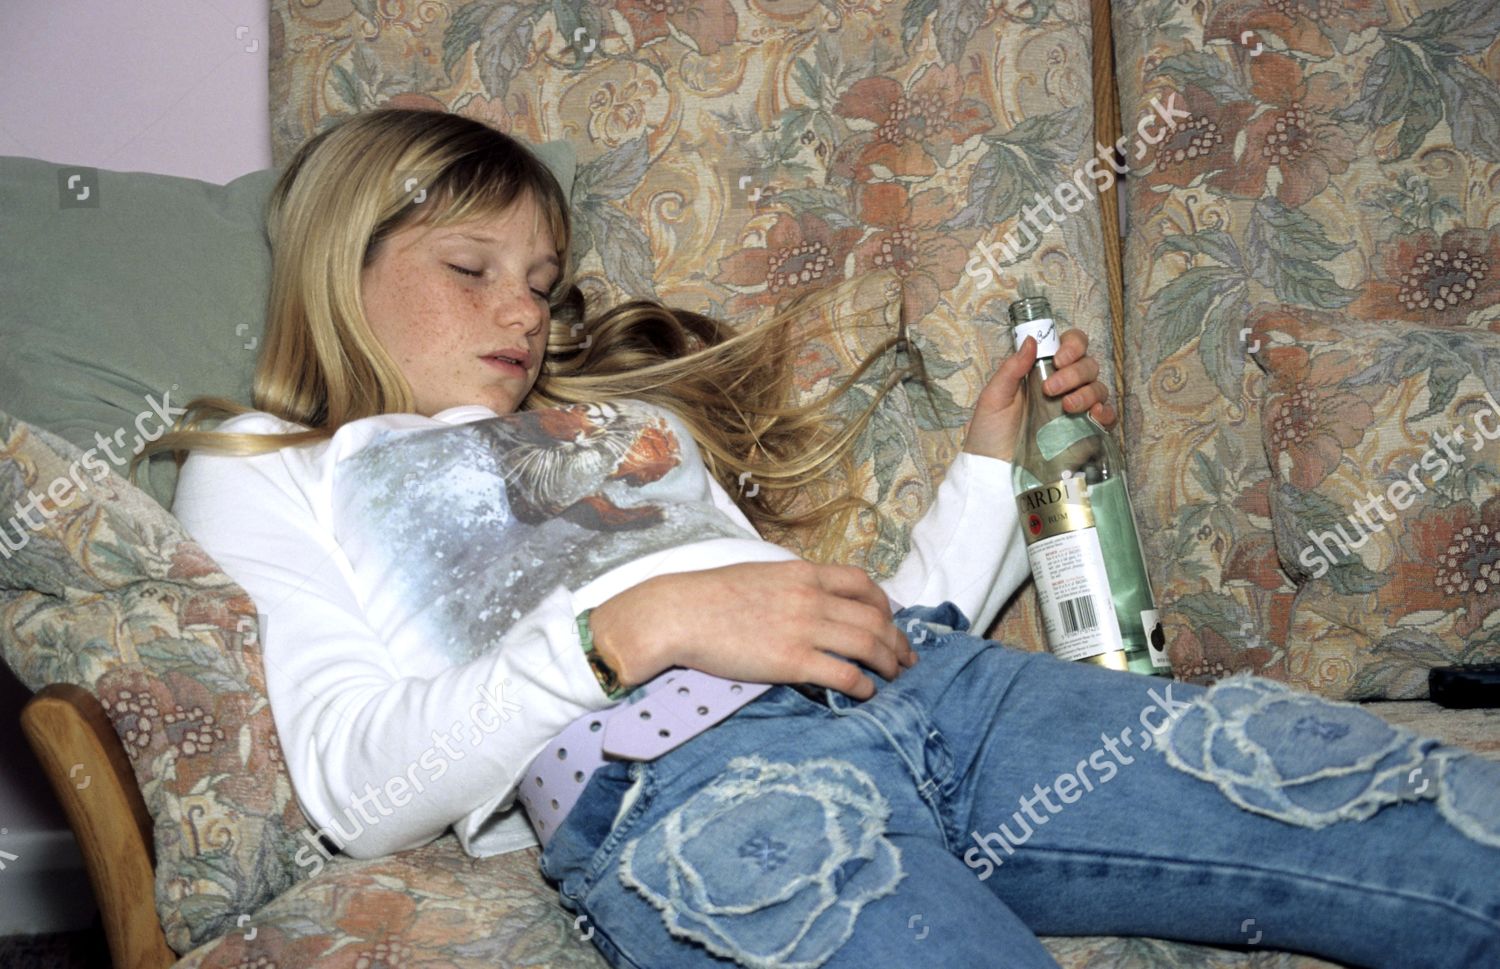 Model Released Teenage Girl Drunk Sleeping image